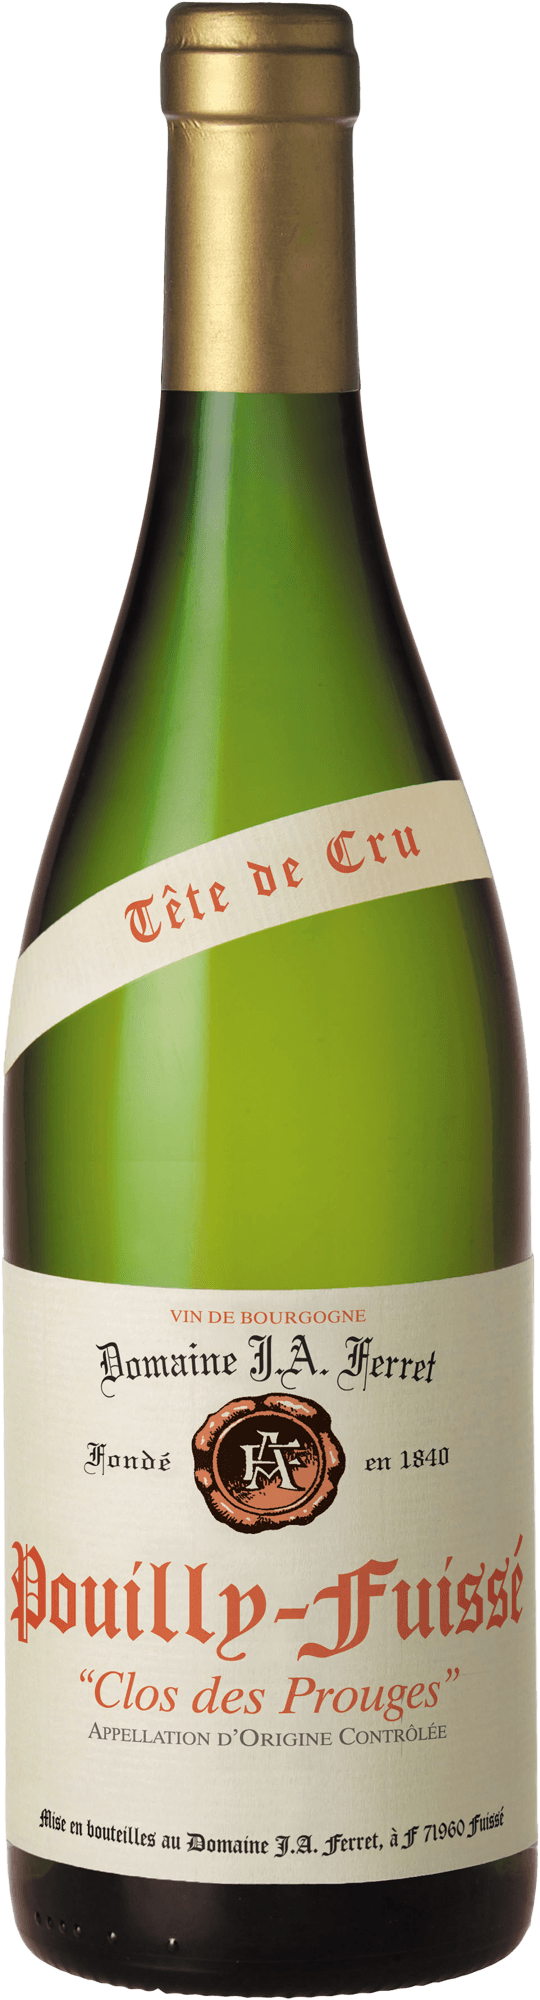 Pouilly fuiss tte de cru clos des prouges 2018 Domaine FERRET J.A., Bourgogne blanc